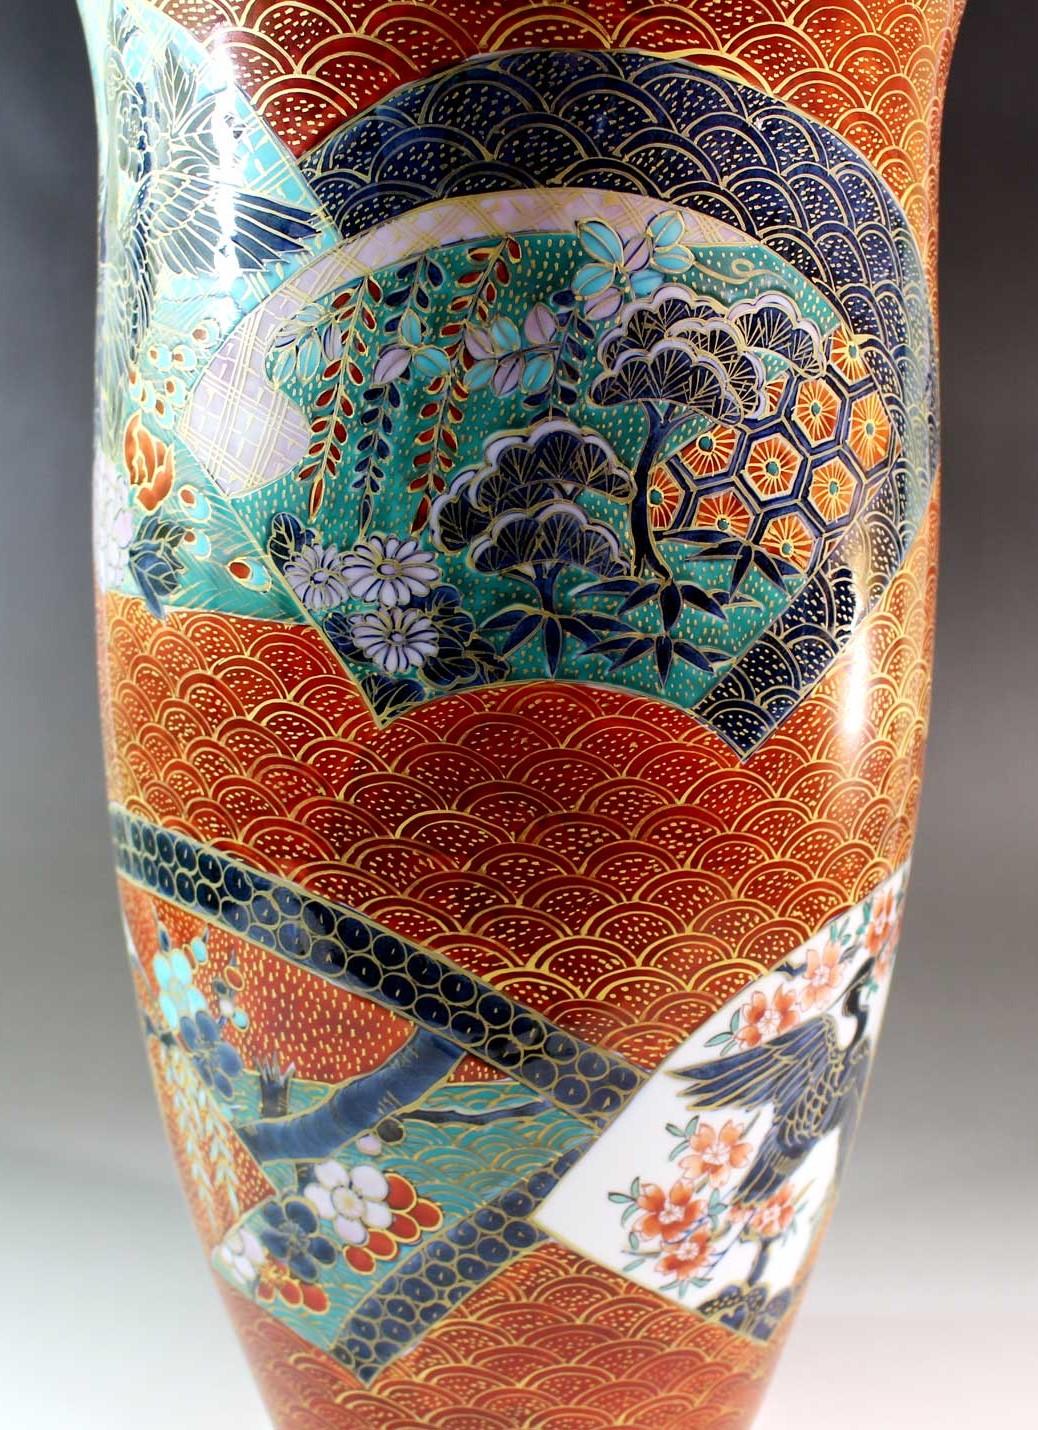 Außergewöhnliche große japanische Porzellanvase, die innen mit Platin vergoldet und außen auf dem markant geformten Korpus mit roter Handmalerei verziert ist, ein Meisterwerk eines weithin anerkannten Porzellanmeisters aus der japanischen Region